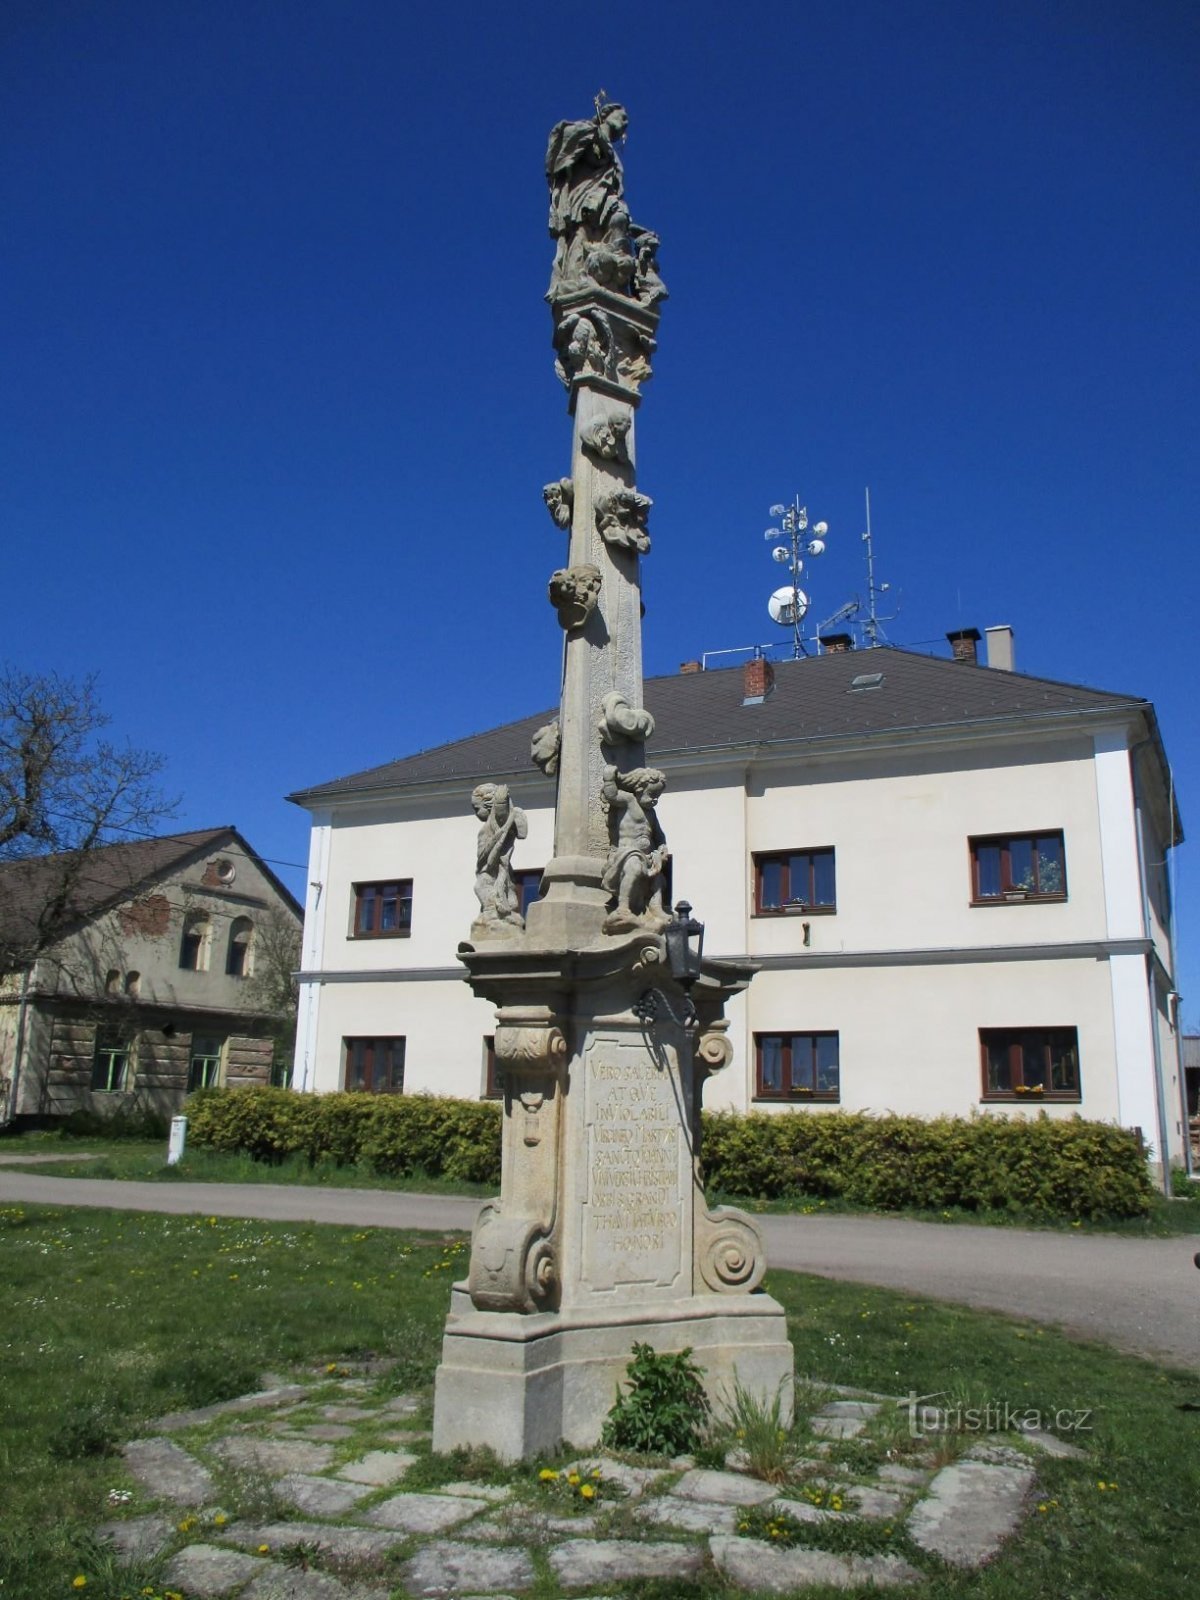 Một cột có tượng St. John of Nepomuck (Chotěborky, ngày 20.4.2020 tháng XNUMX năm XNUMX)